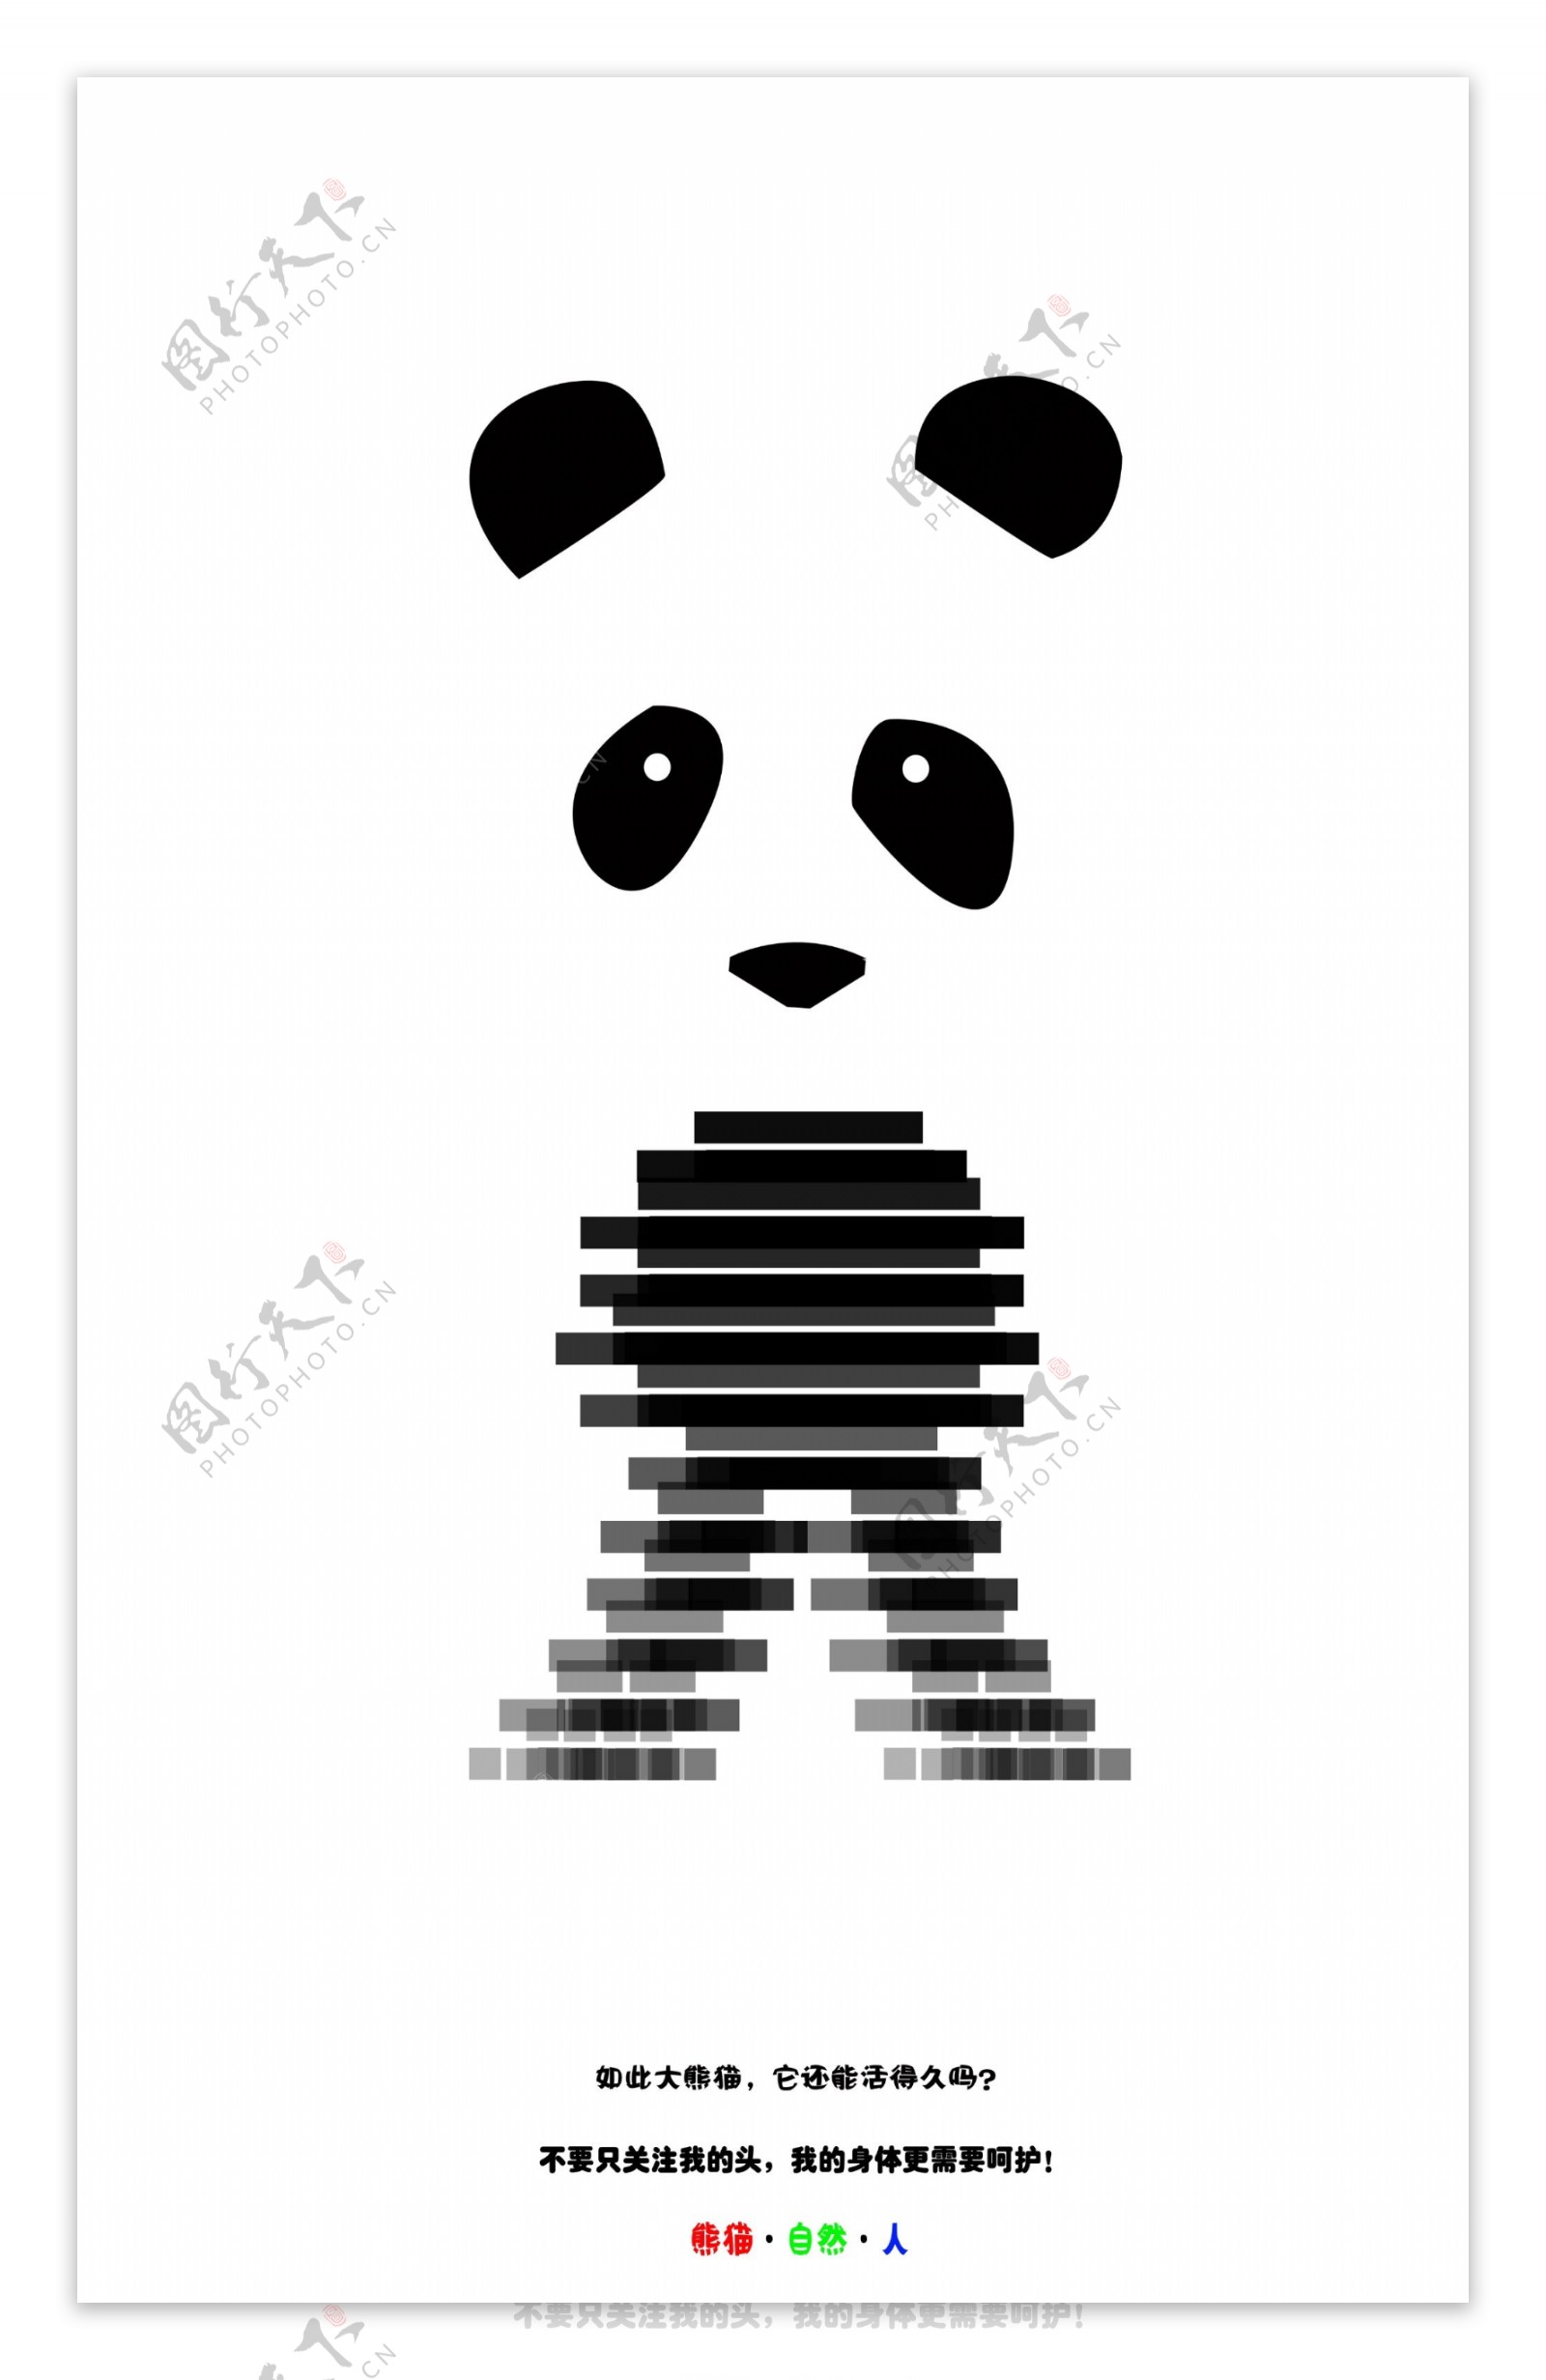 熊猫广告图片